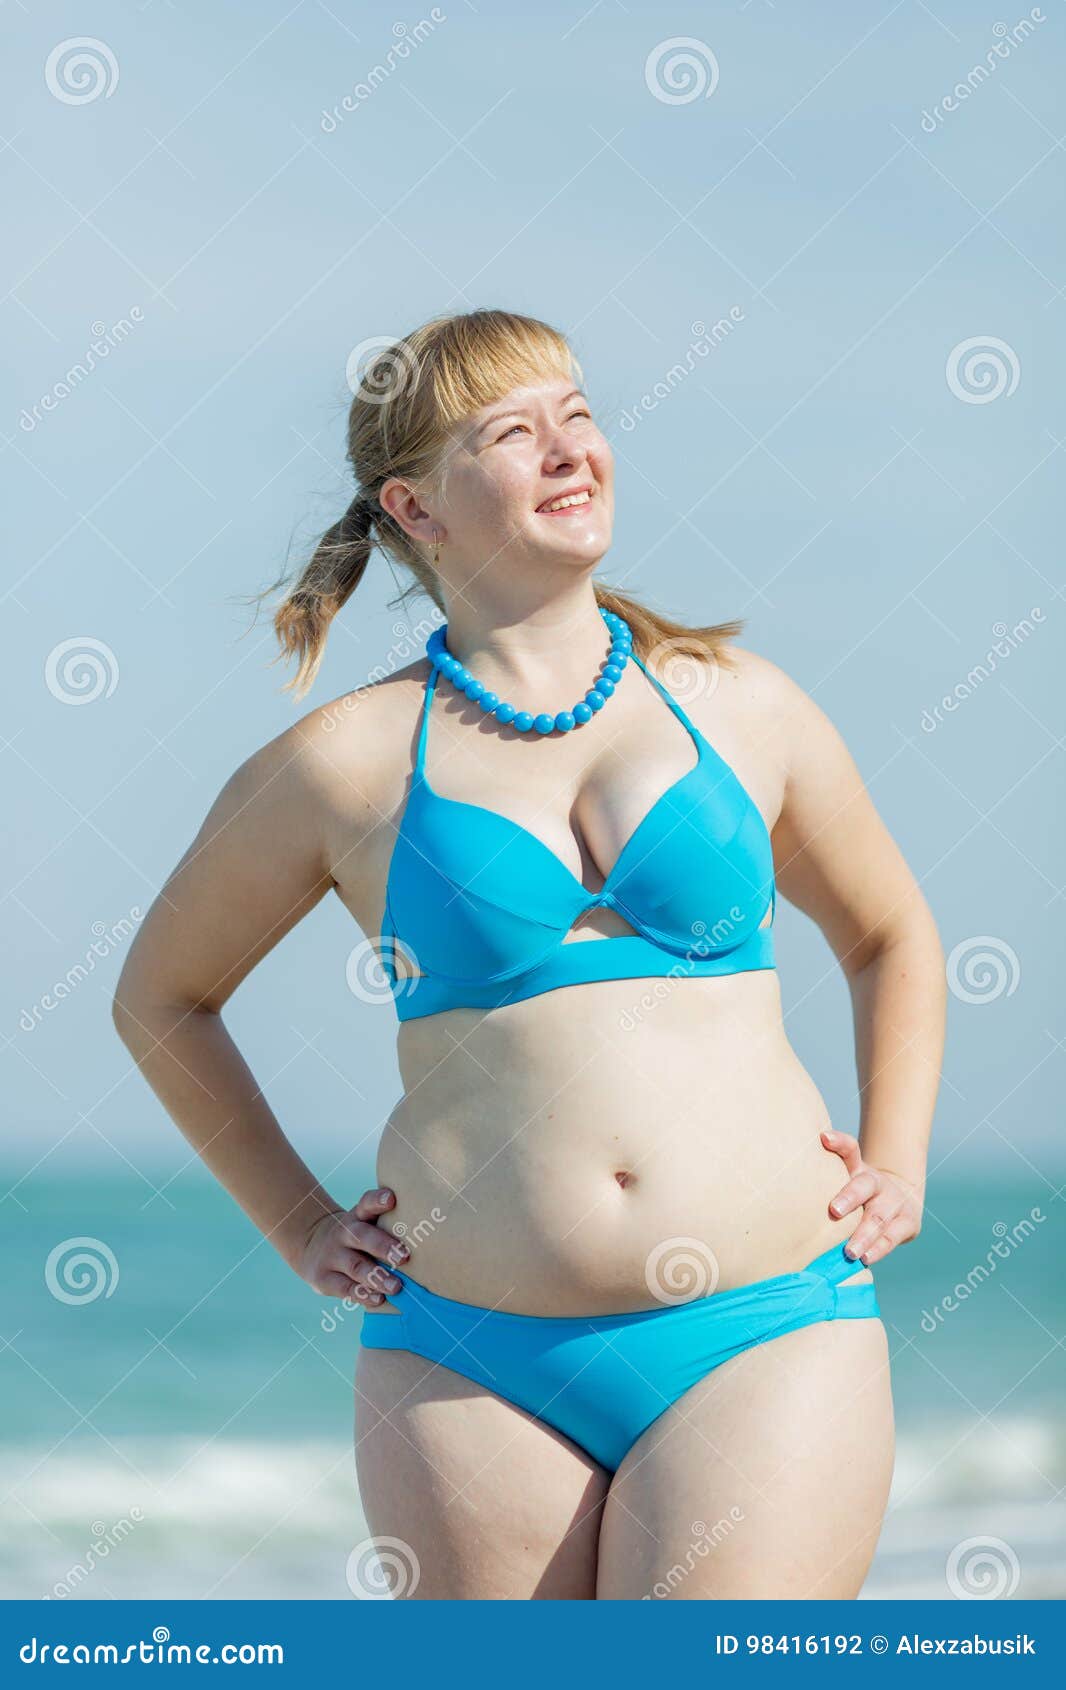 804 Middle Aged Woman Bikini Stock Photos photo